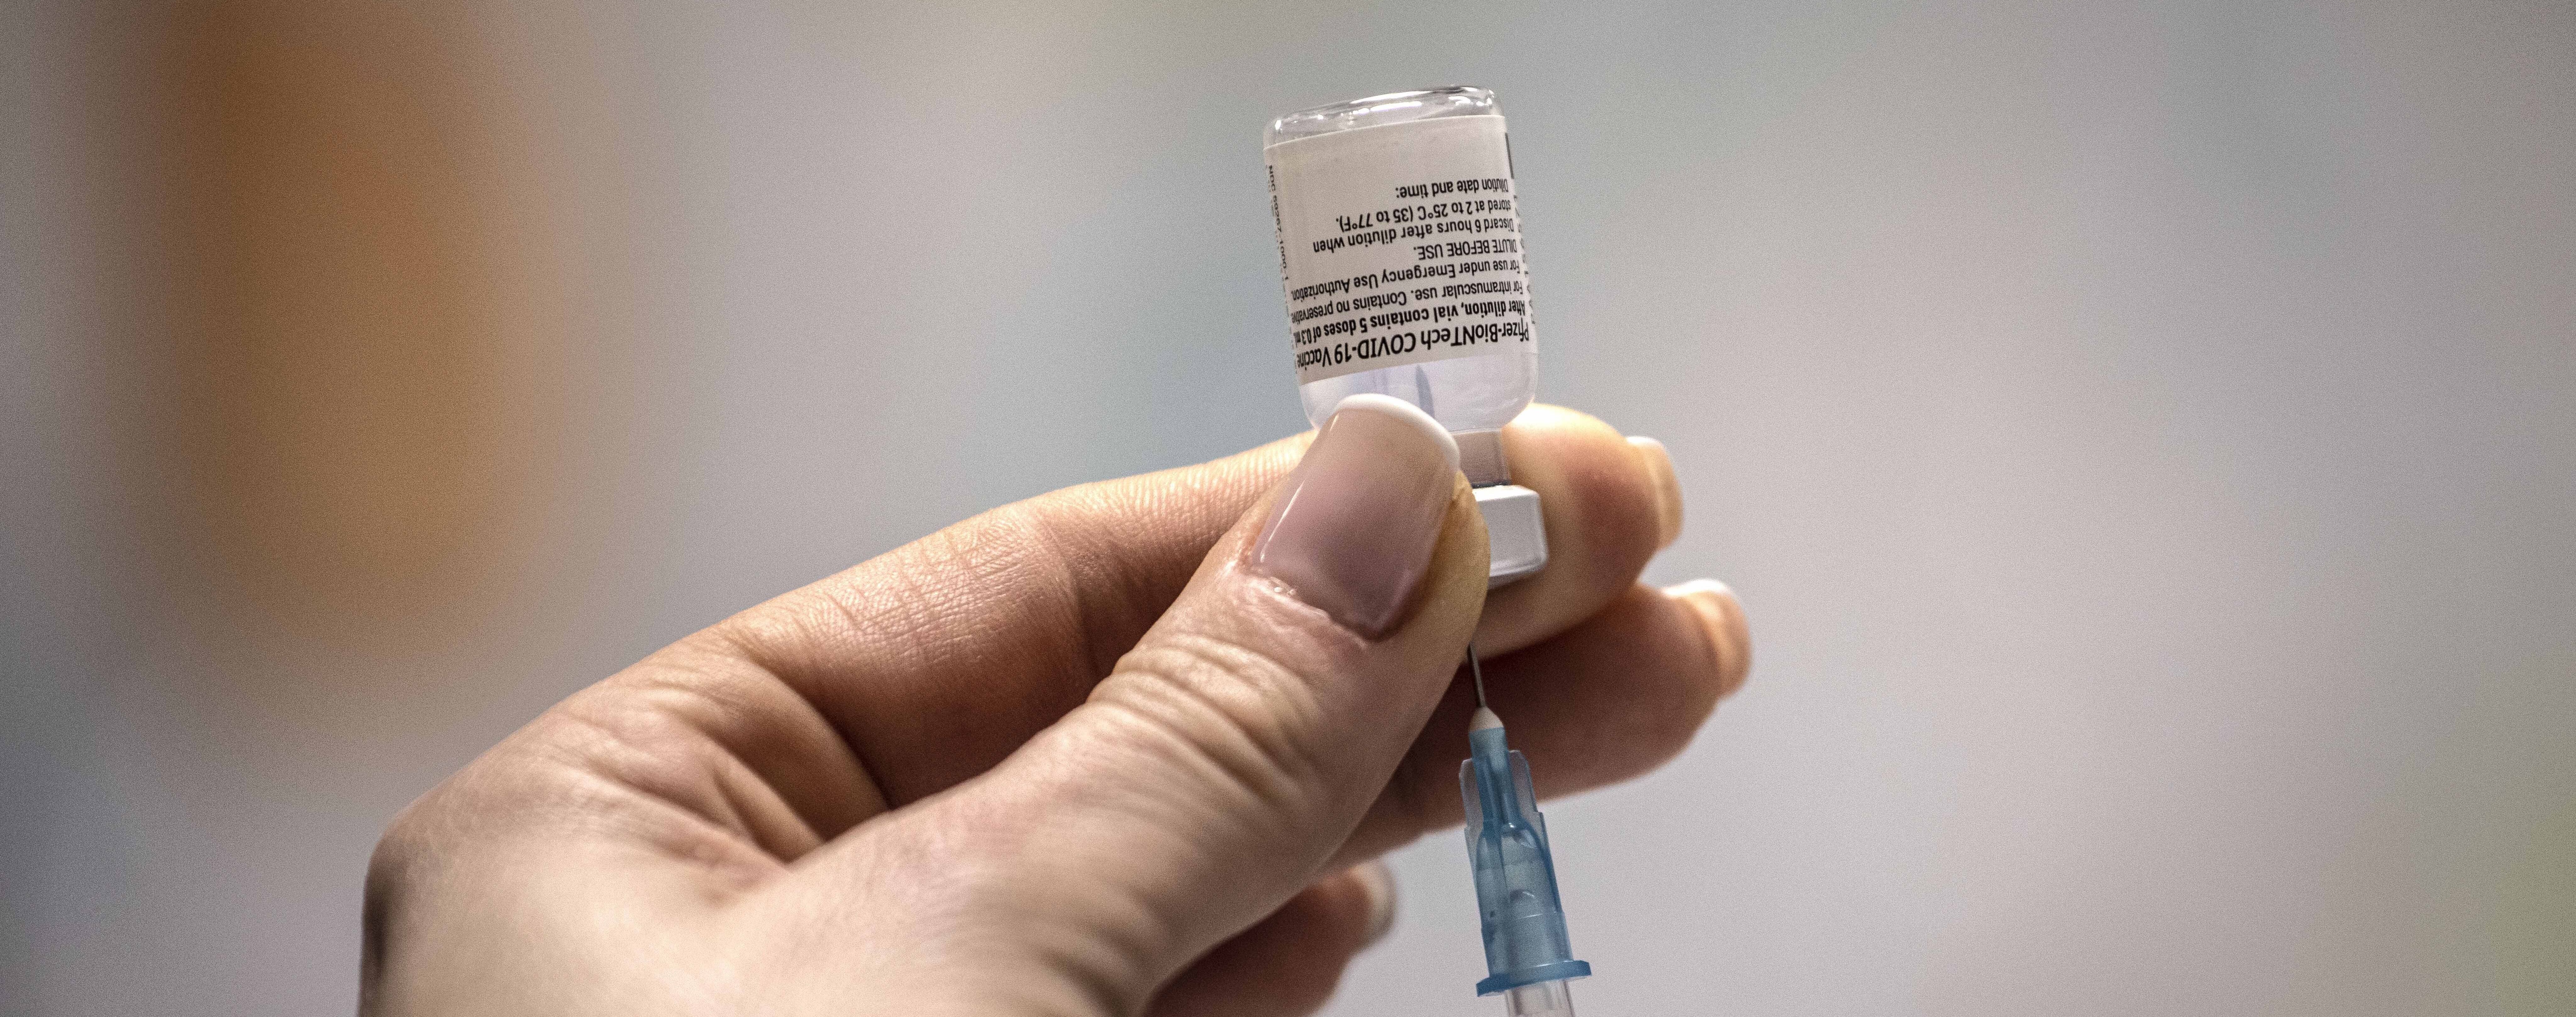 В Германии стартует завершающая фаза испытаний вакцины от коронавируса: ее проверят на медиках